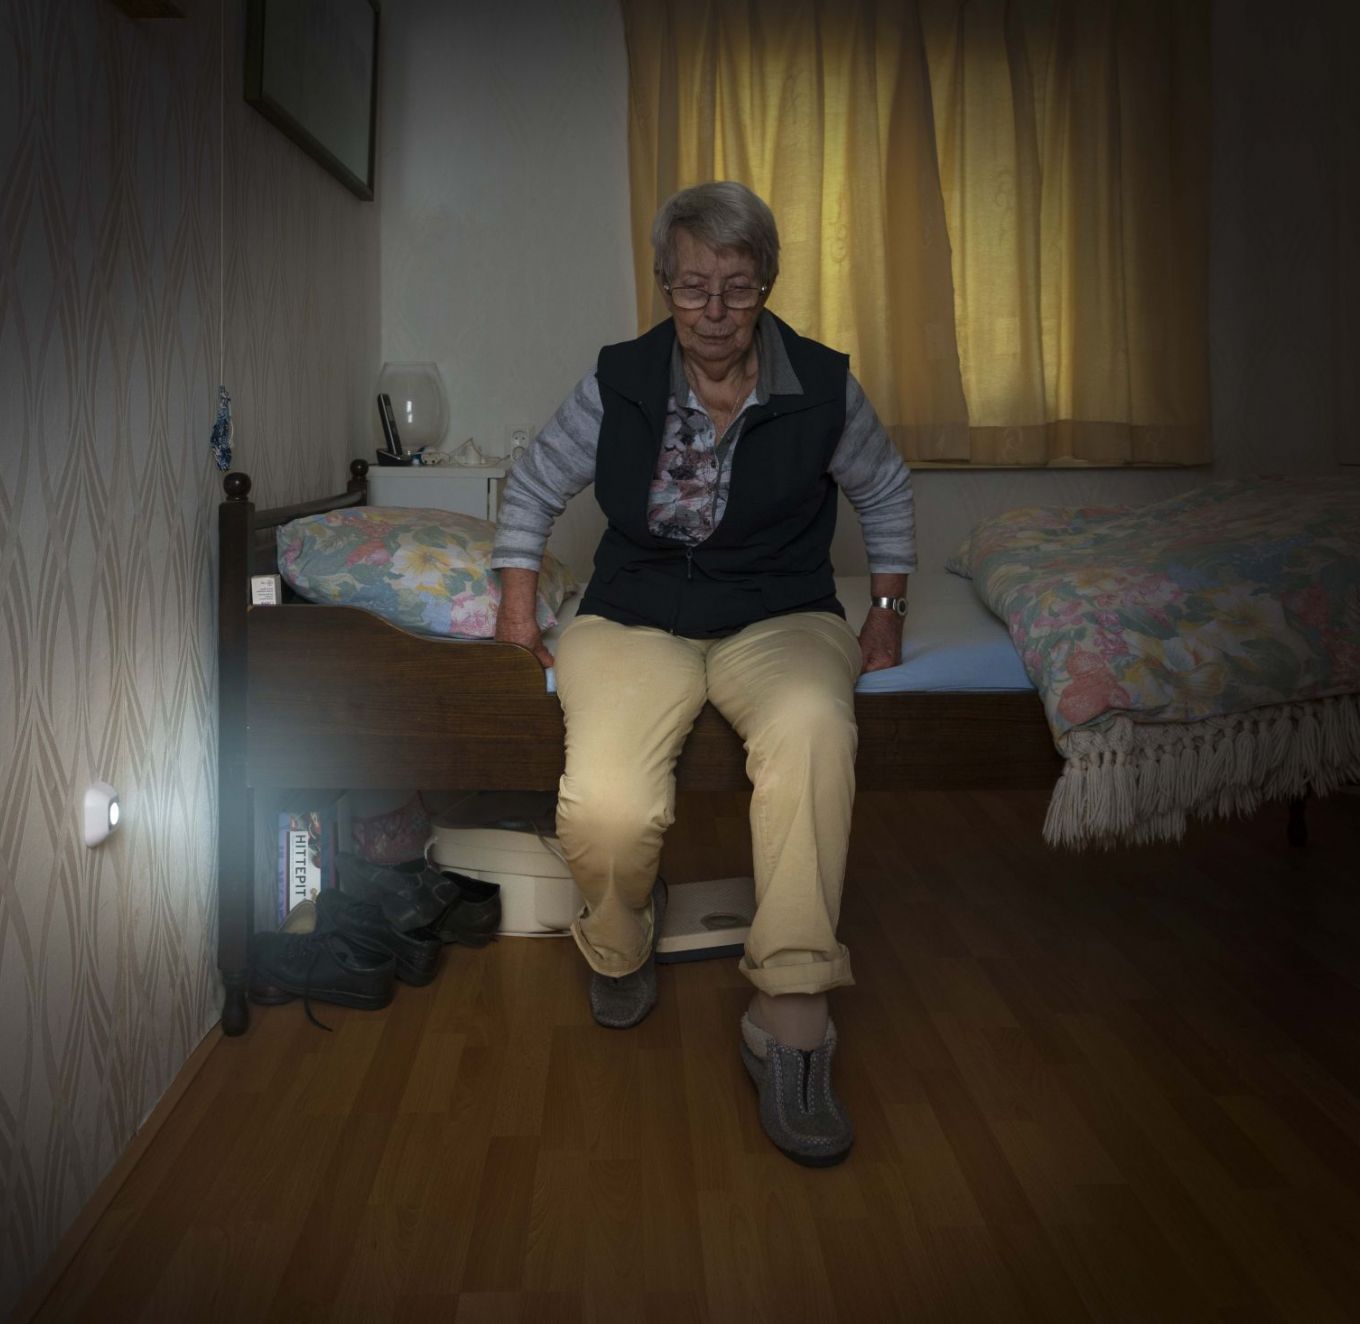 Oudere vrouw zit op rand van het bed terwijl een sensorlampje de vloer verlicht